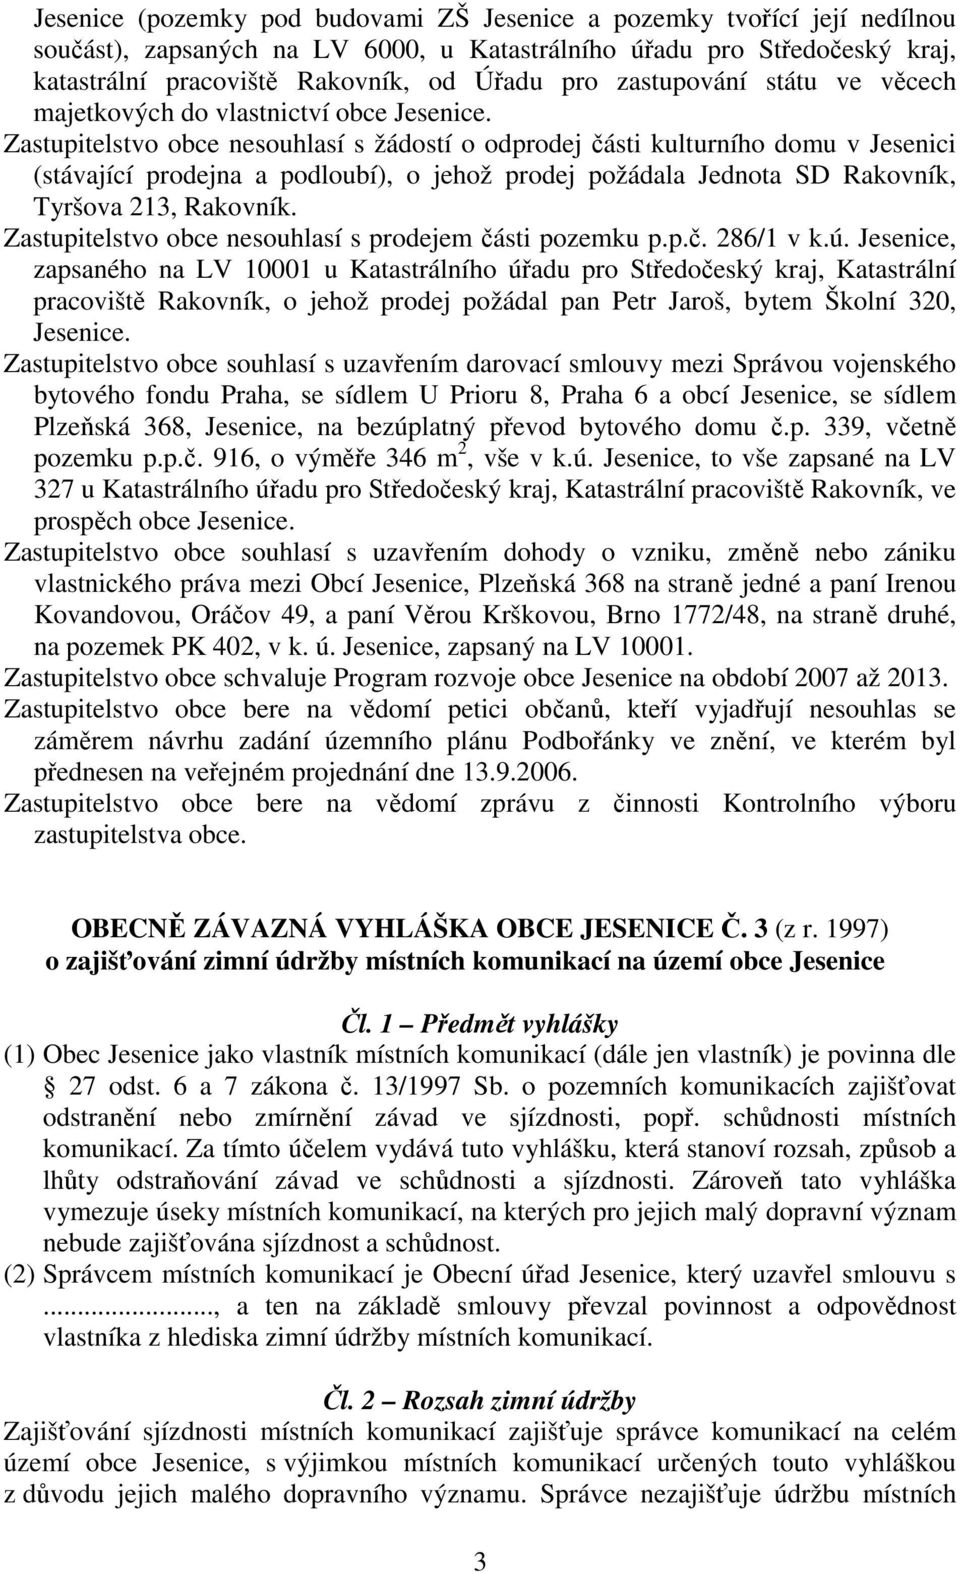 Zastupitelstvo obce nesouhlasí s žádostí o odprodej části kulturního domu v Jesenici (stávající prodejna a podloubí), o jehož prodej požádala Jednota SD Rakovník, Tyršova 213, Rakovník.